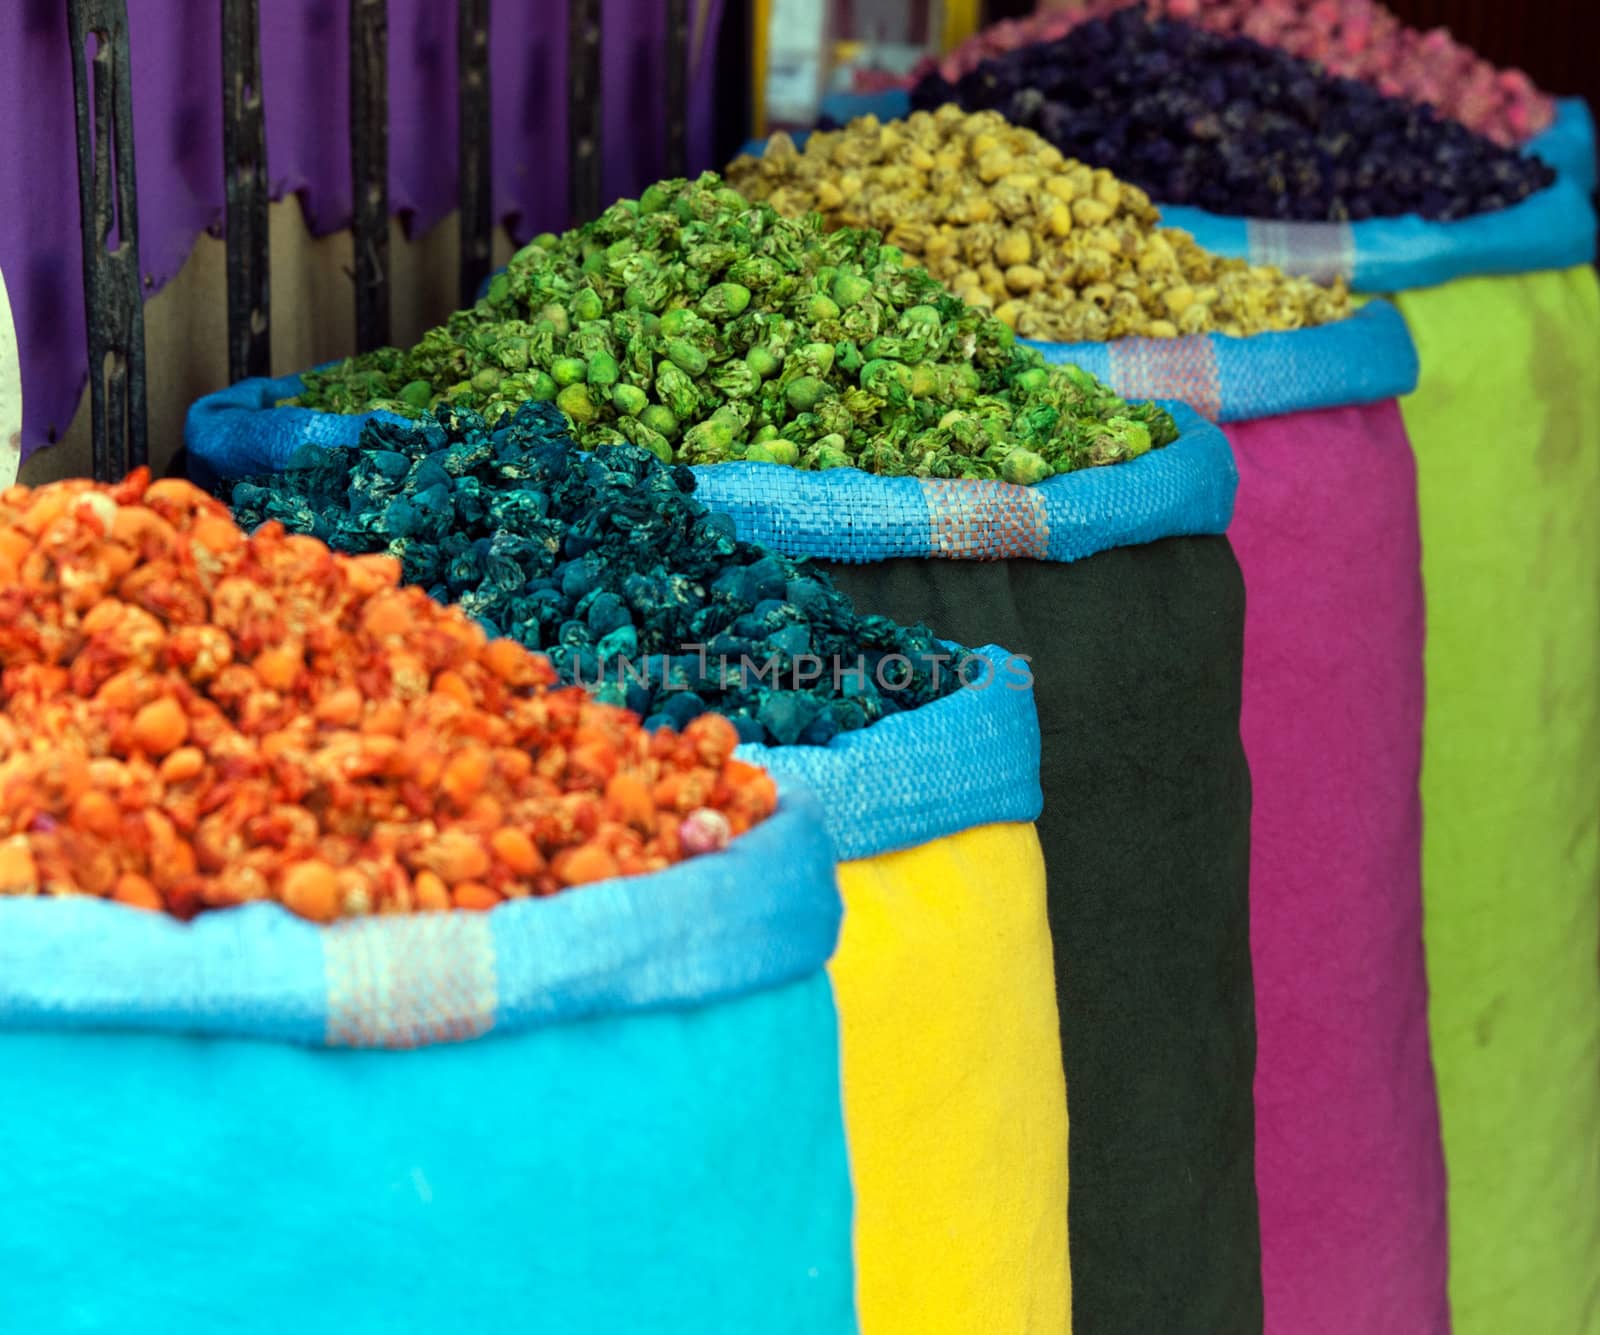 Bazaar in Morocco - Marrakech